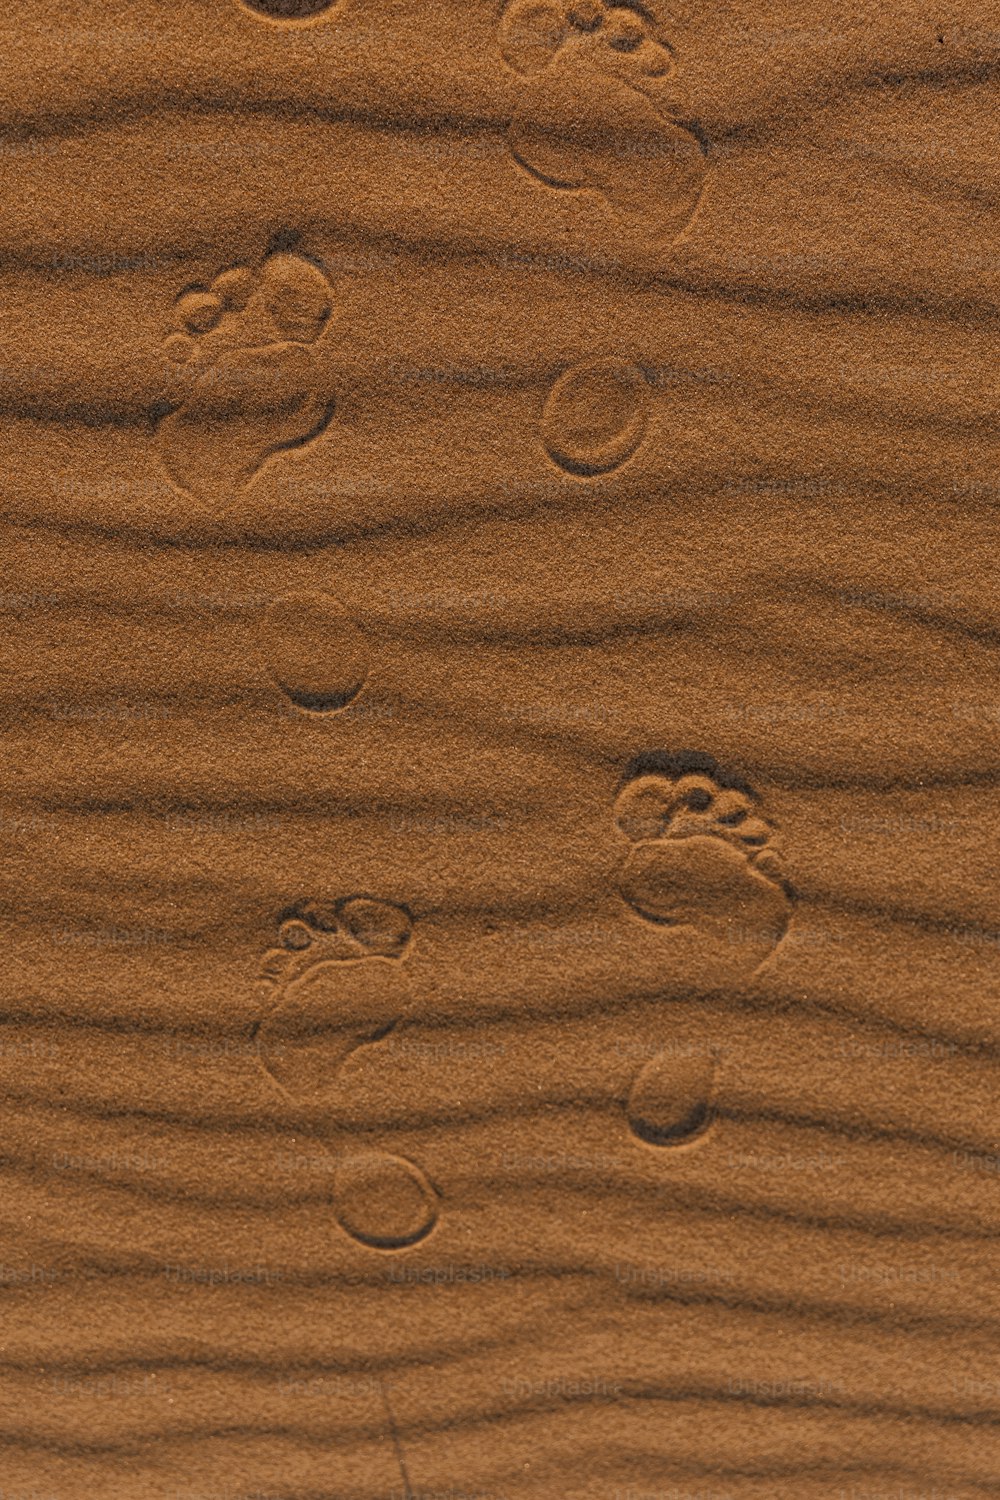 impronte nella sabbia di una spiaggia